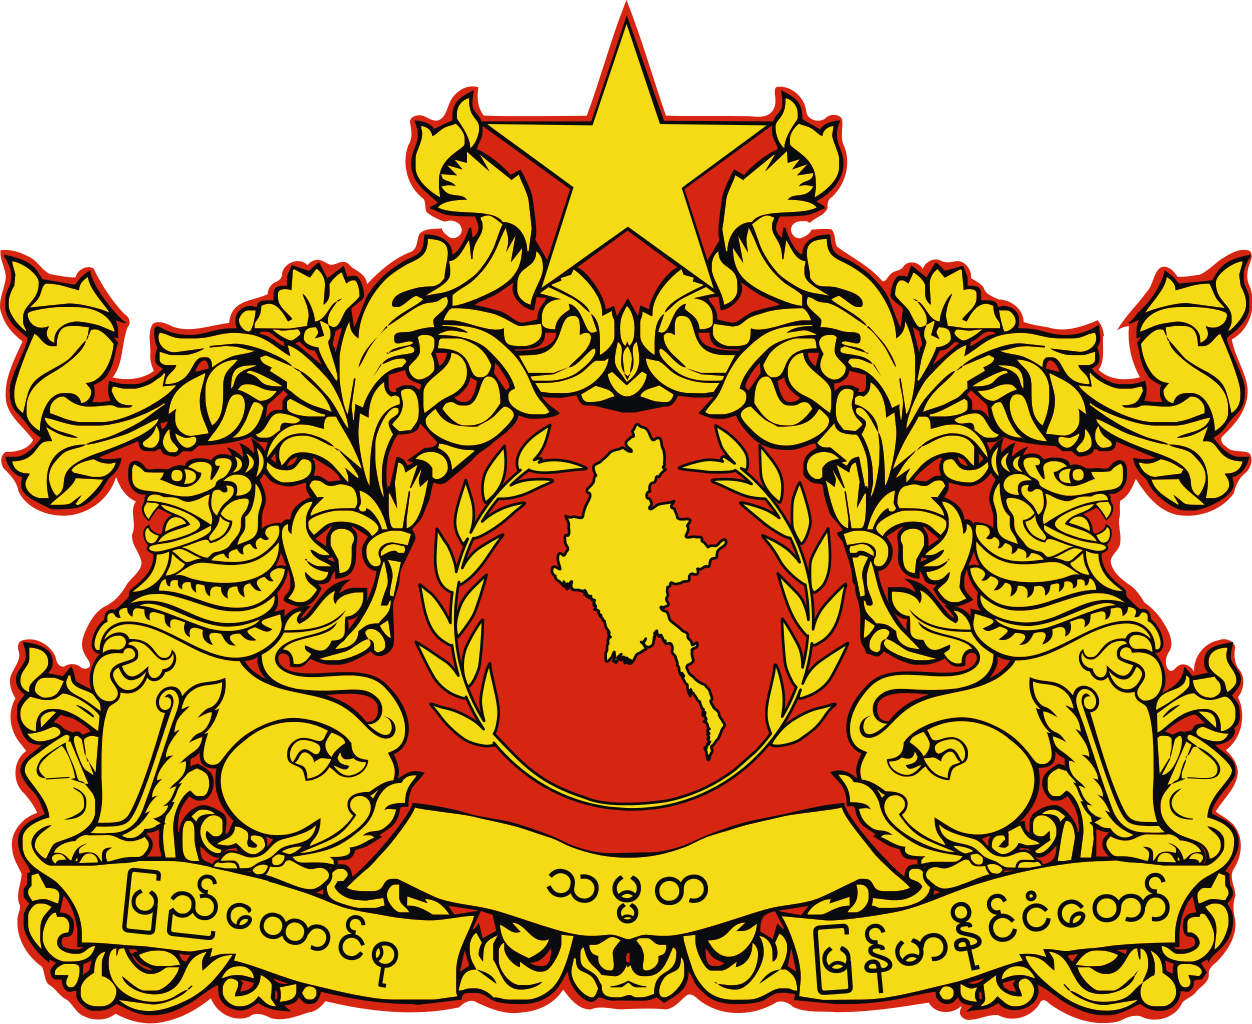 緬甸反法西斯人民自由同盟